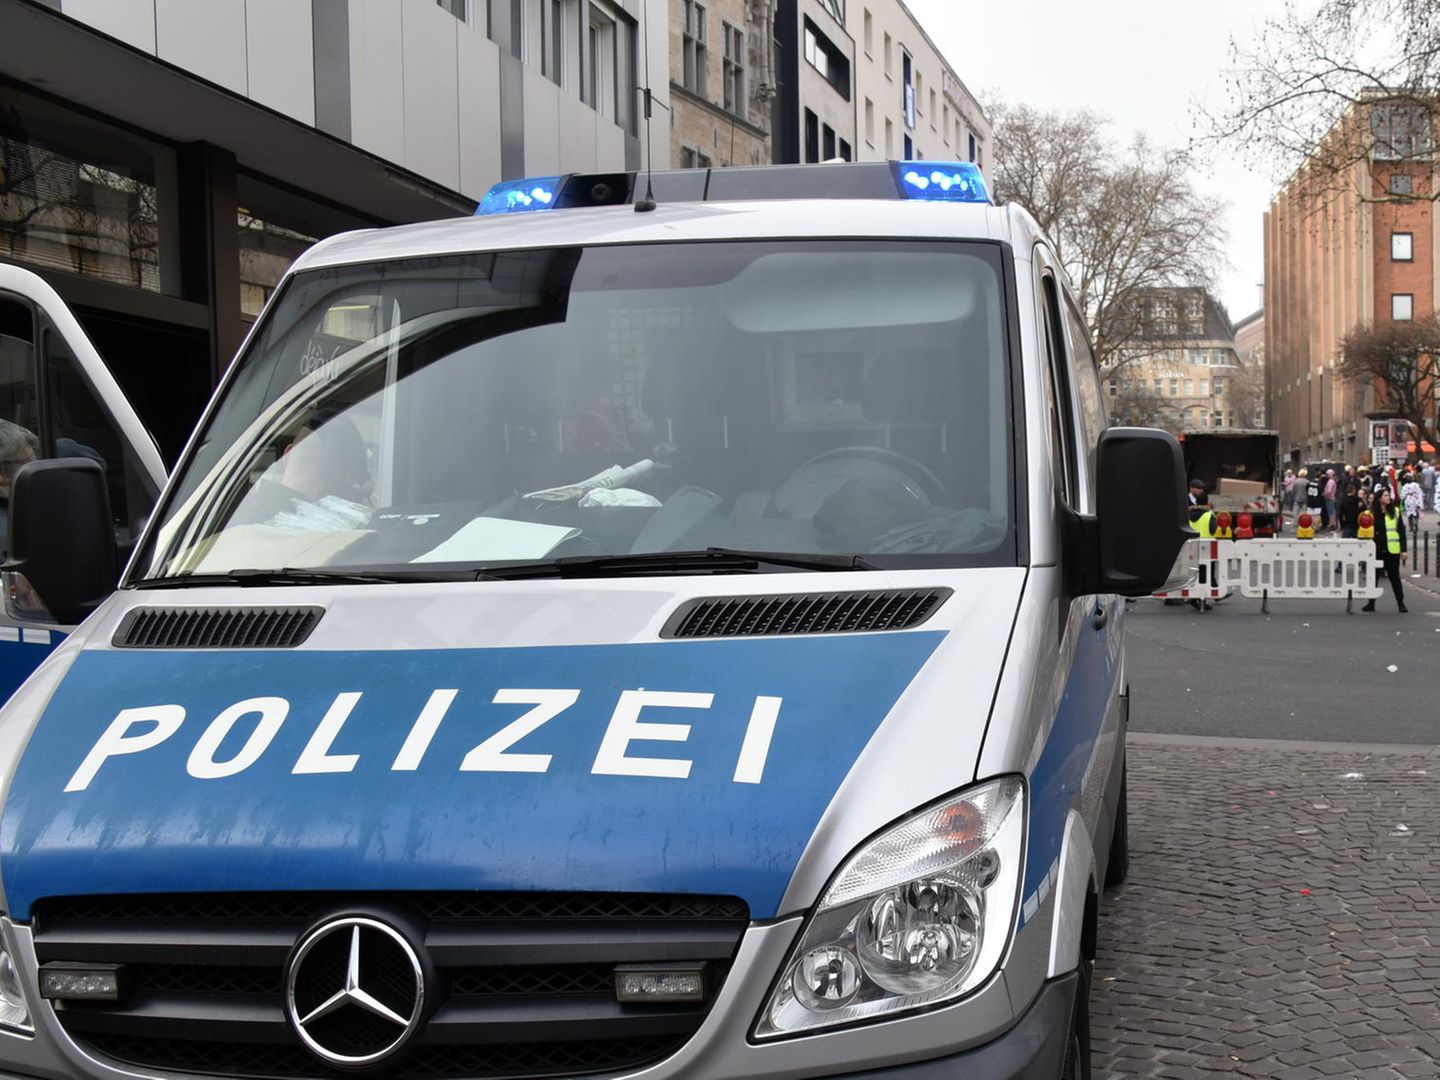 Nachrichten aus Deutschland: 14-Jährige tot in Abrisshaus gefunden – Freund unter Verdacht